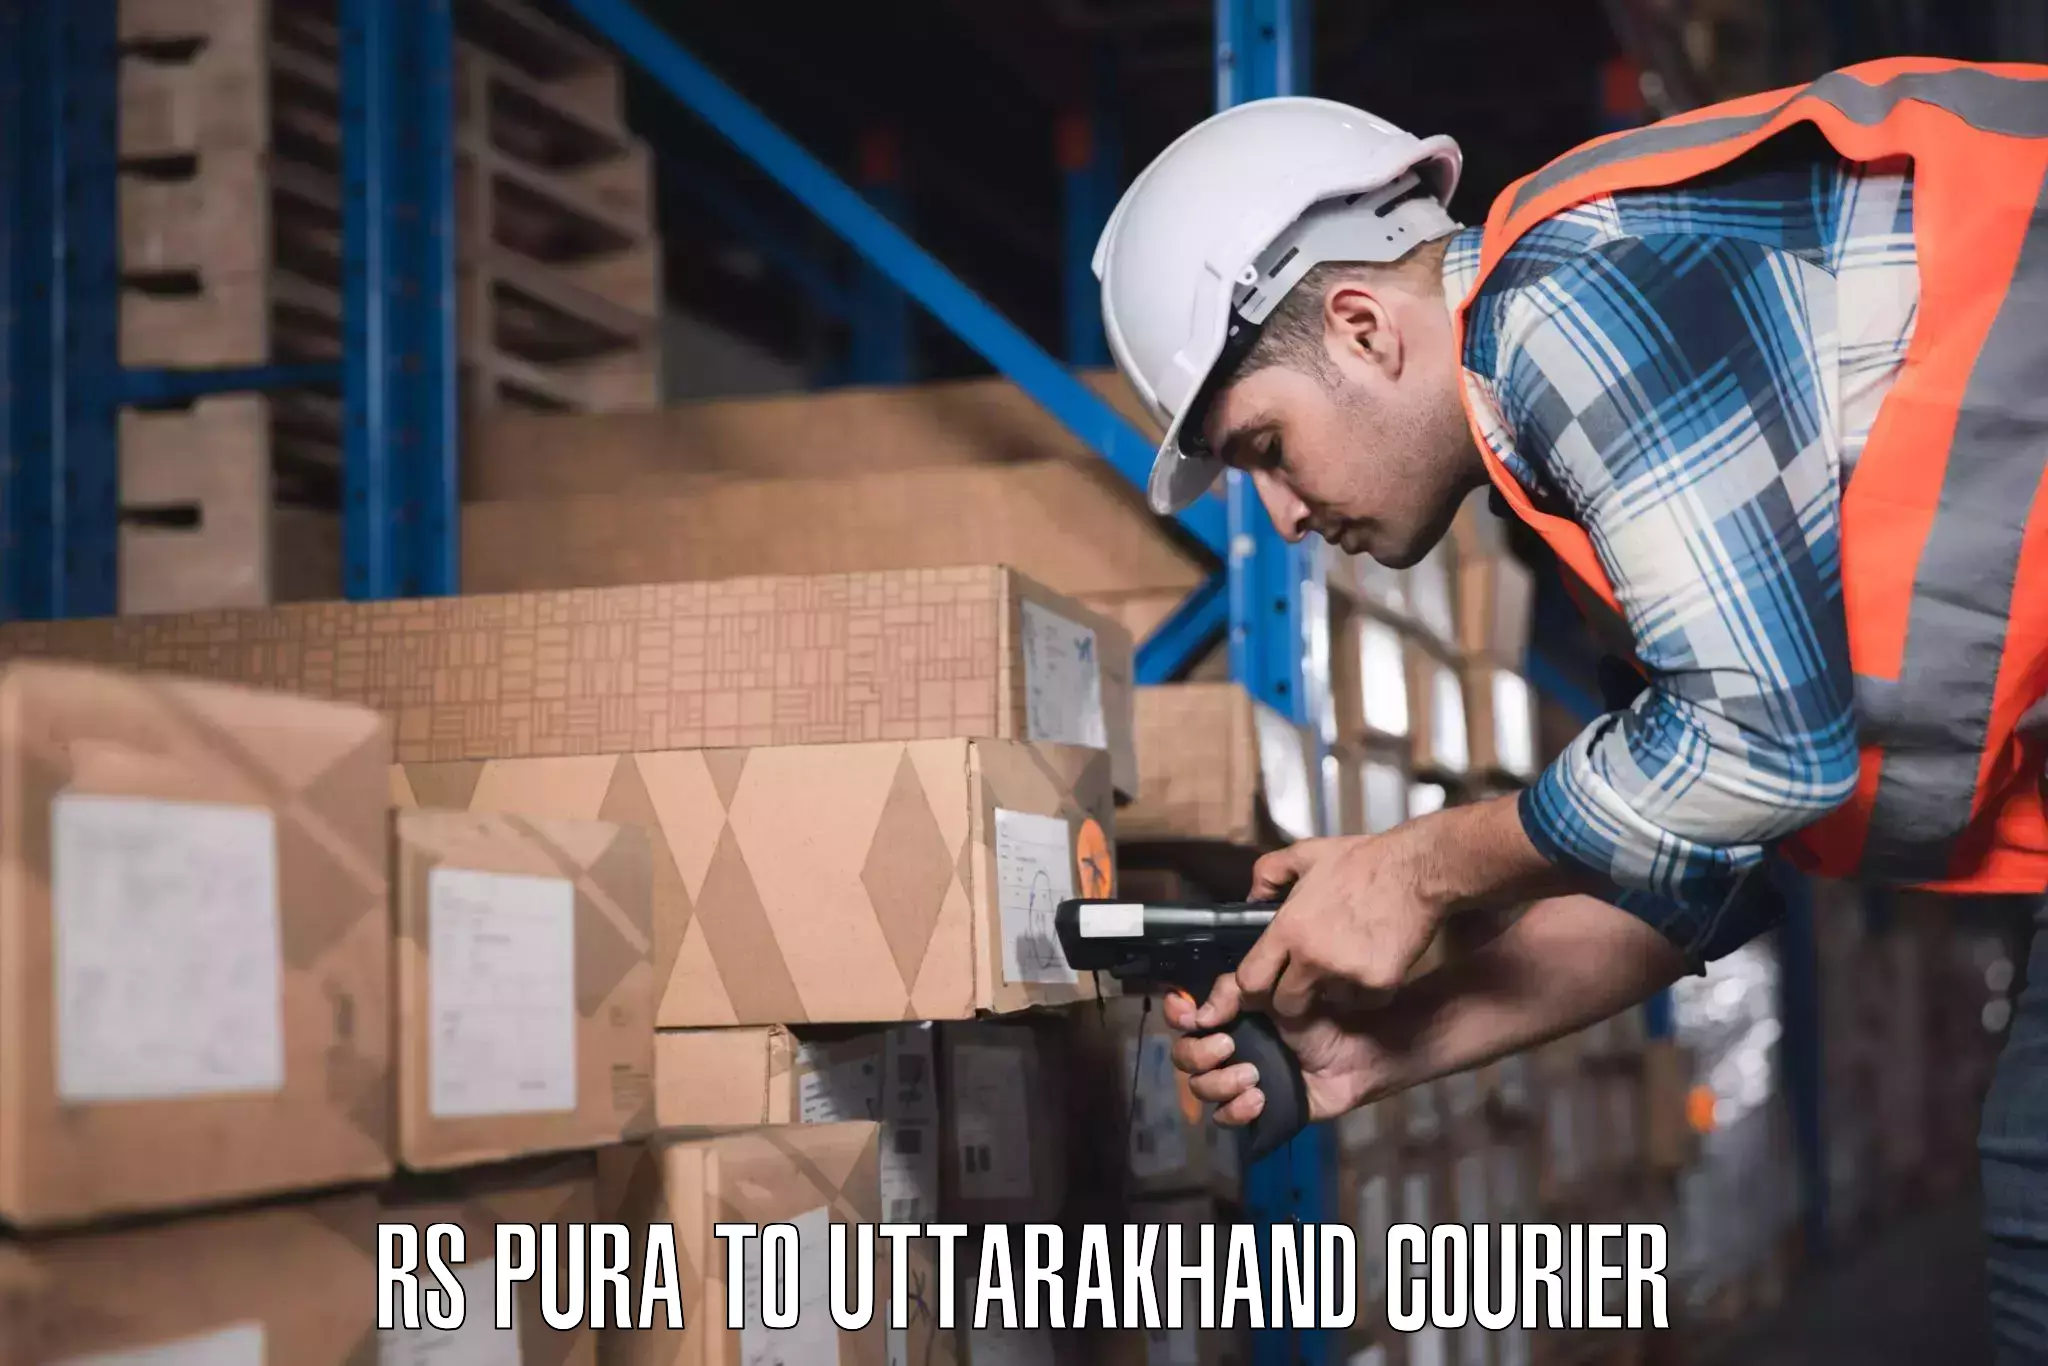 Luggage shipment tracking RS Pura to Uttarakhand